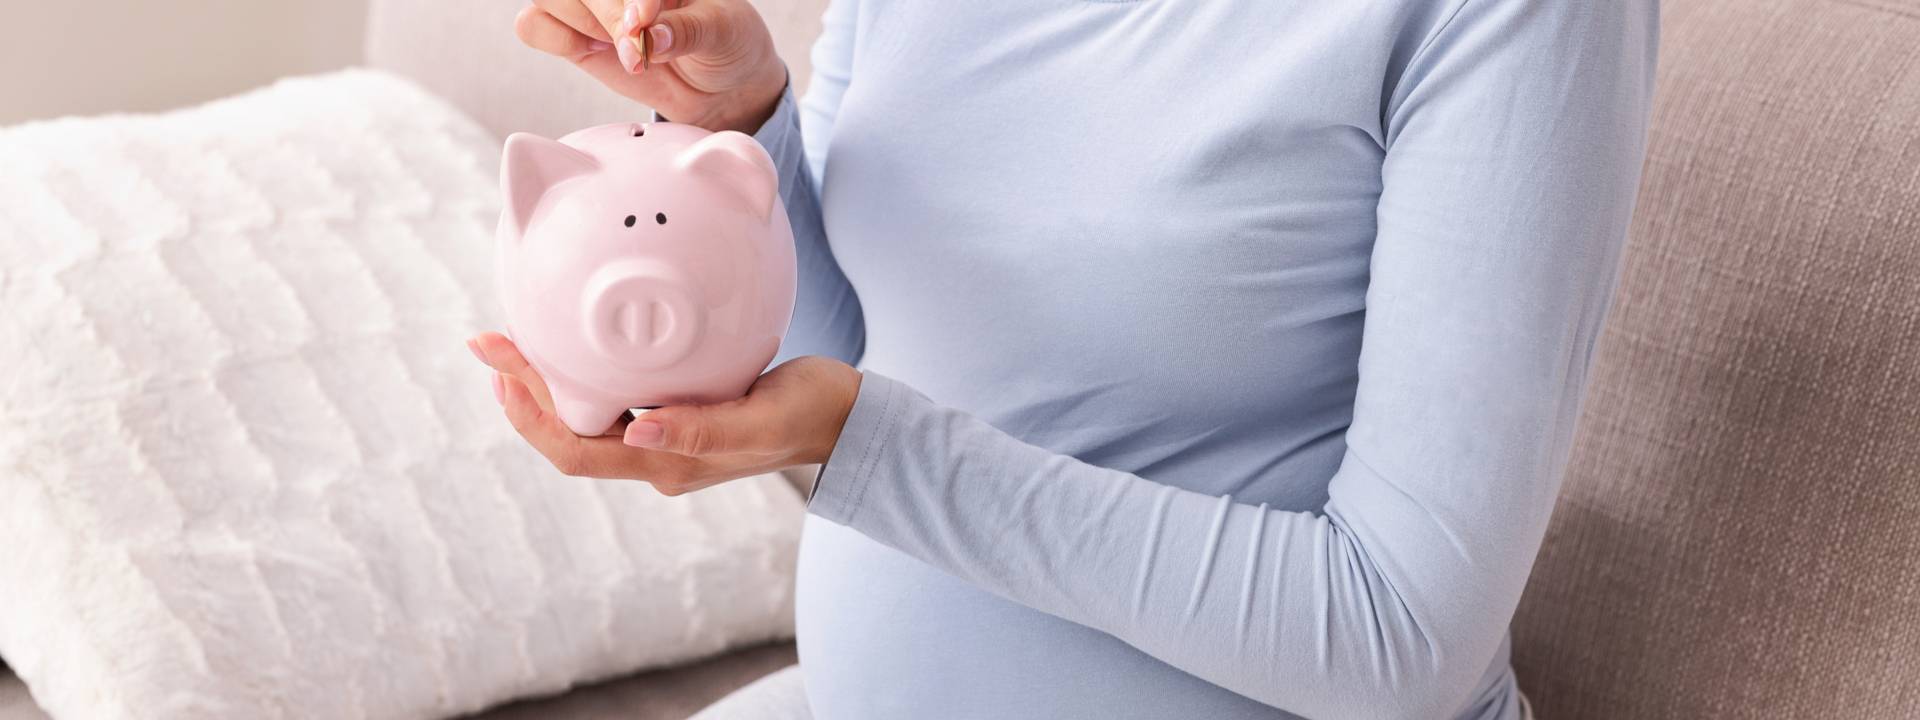 Quanto custa ter um filho?